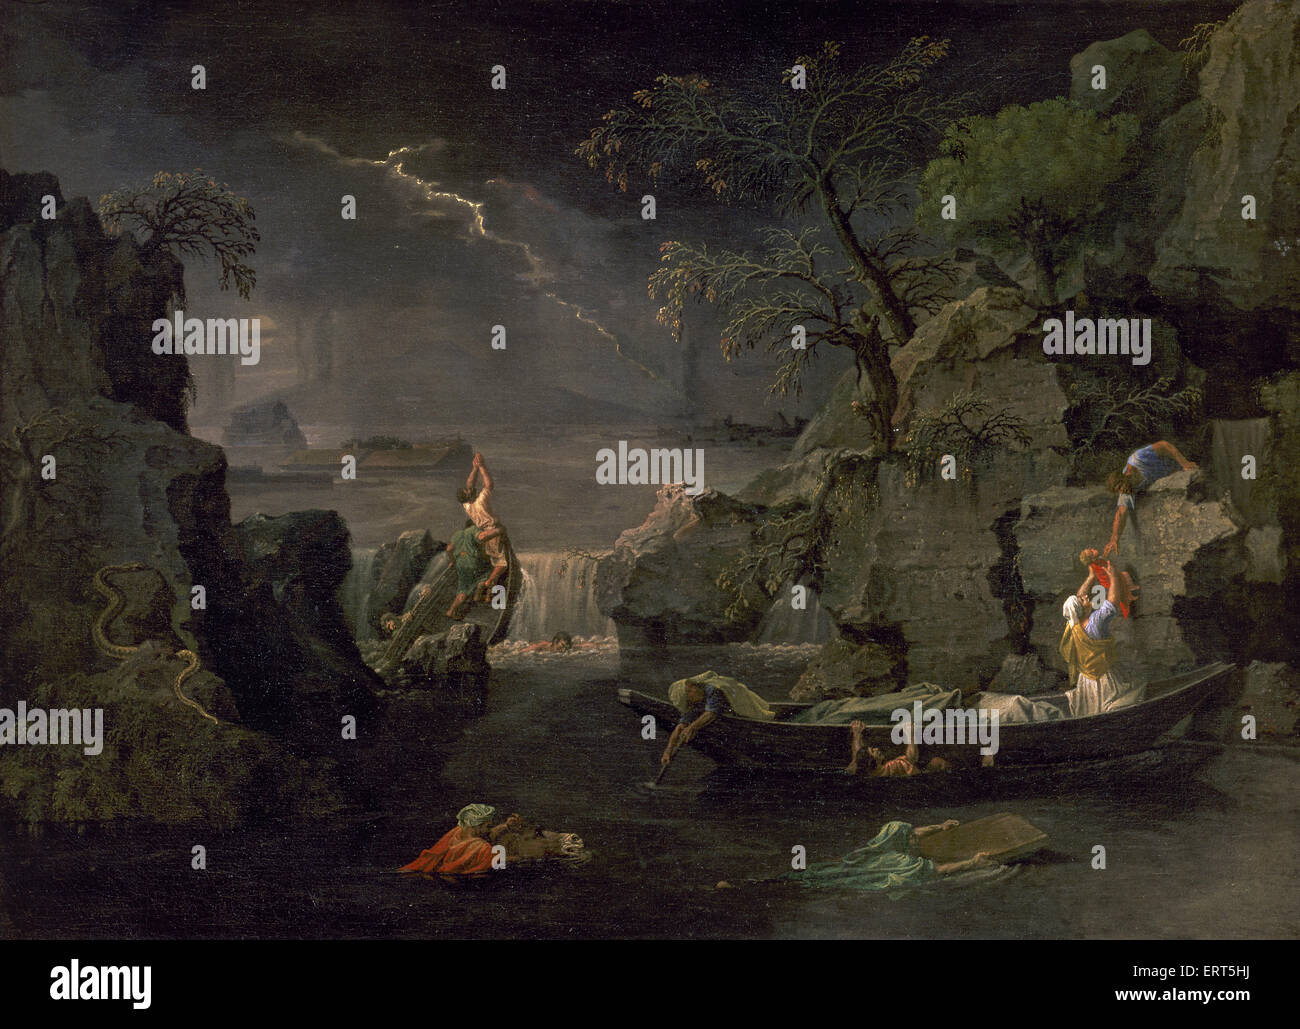 Nicolas Poussin (1594-1665). Französischer Maler. Die vier Jahreszeiten. Winter oder Flood.1660-1664. Louvre-Museum. Paris. Frankreich. Stockfoto